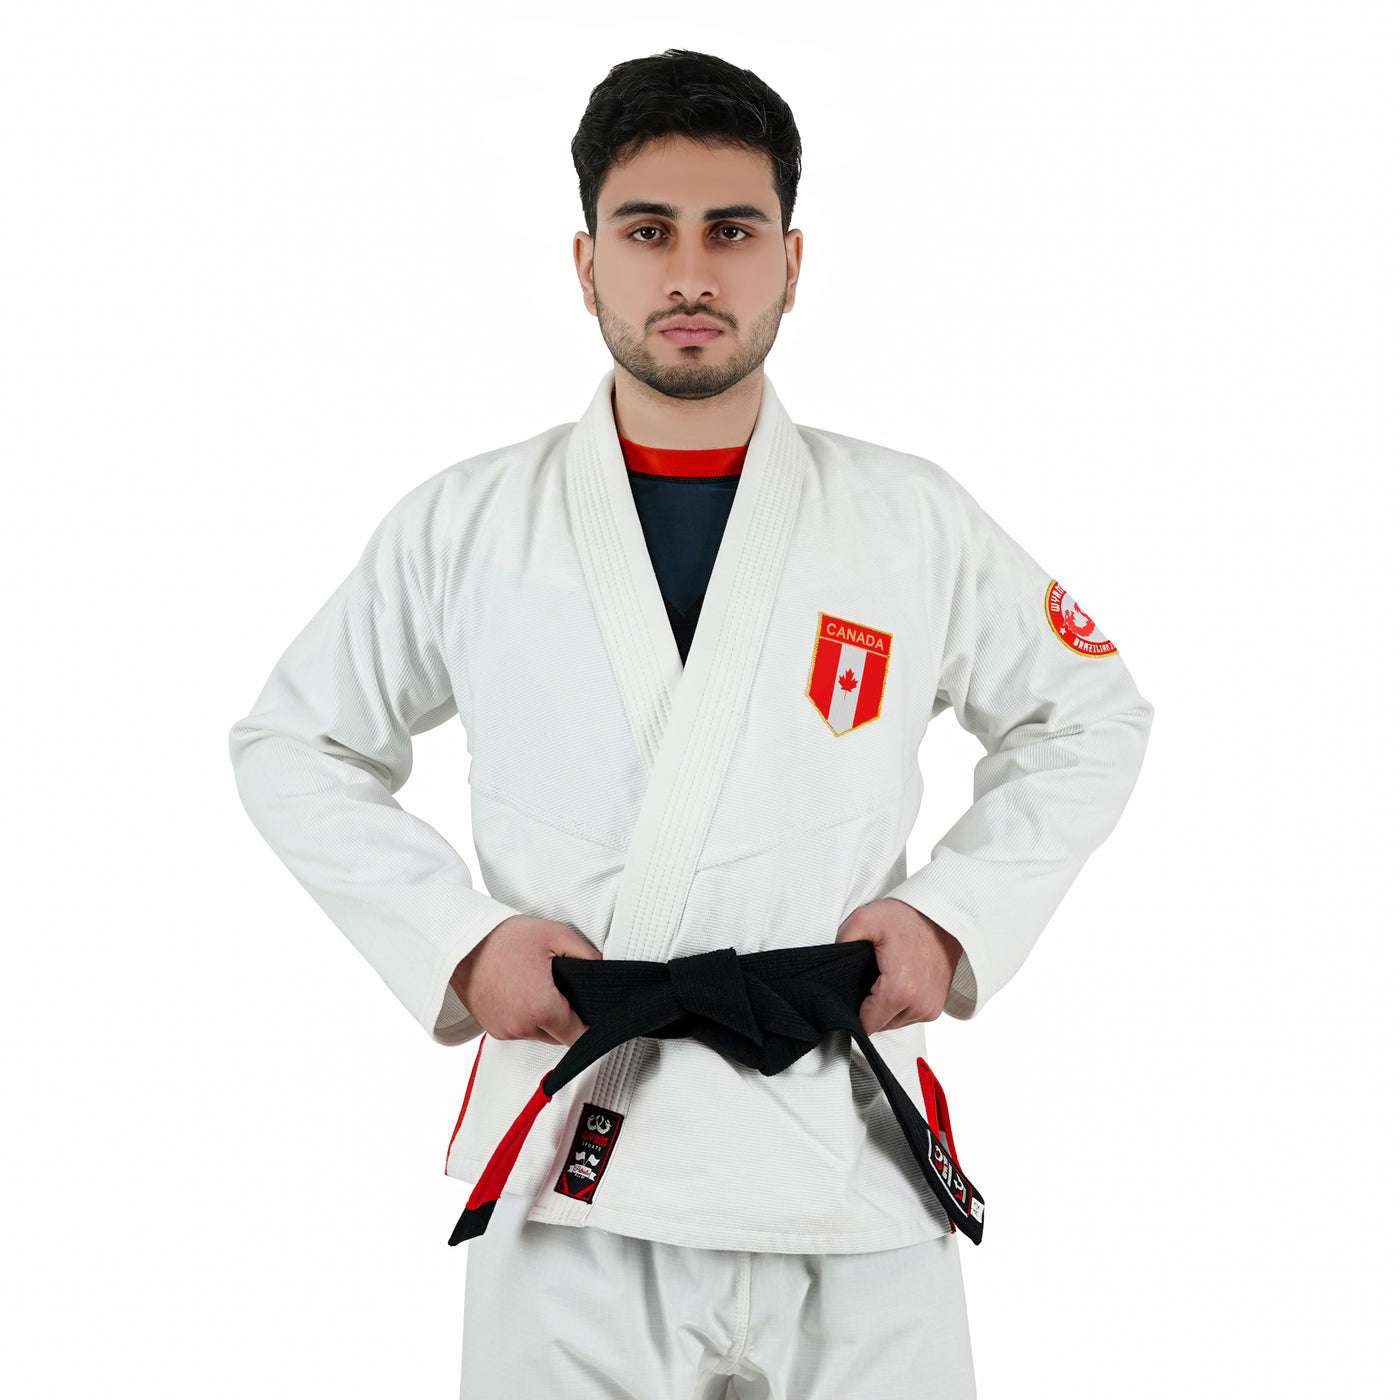 Canadian White Brazilian Jiu Jitsu Gi With Built-in Rash Guard